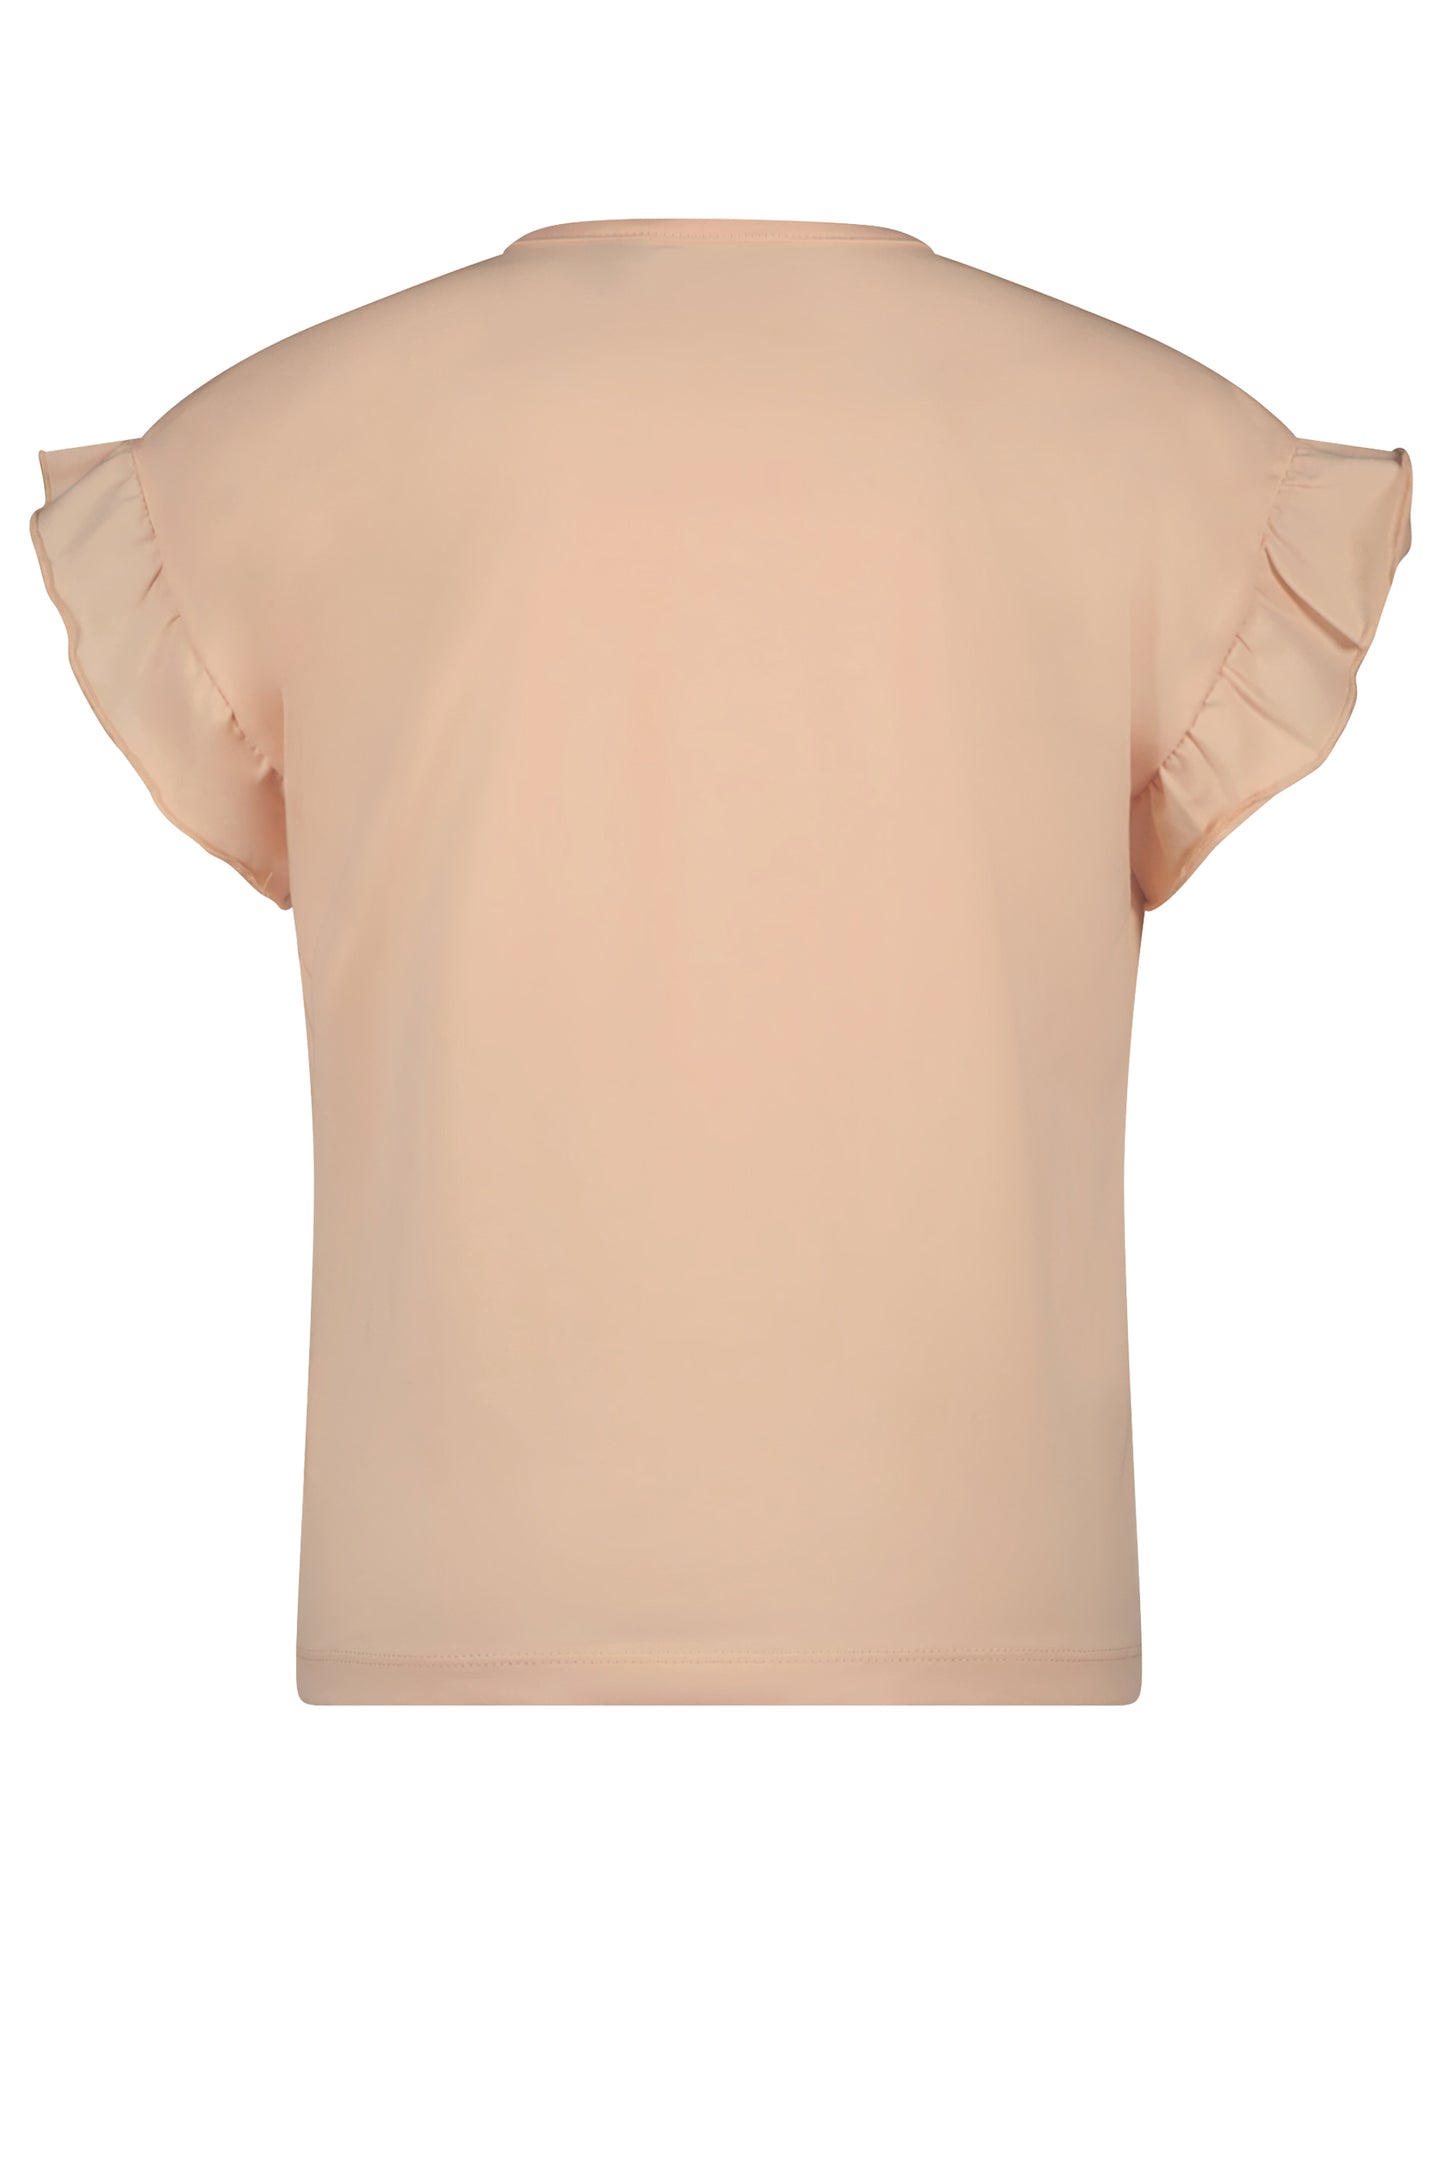 || NONO || T-shirt met ruffle mouwen - Rosy Sand